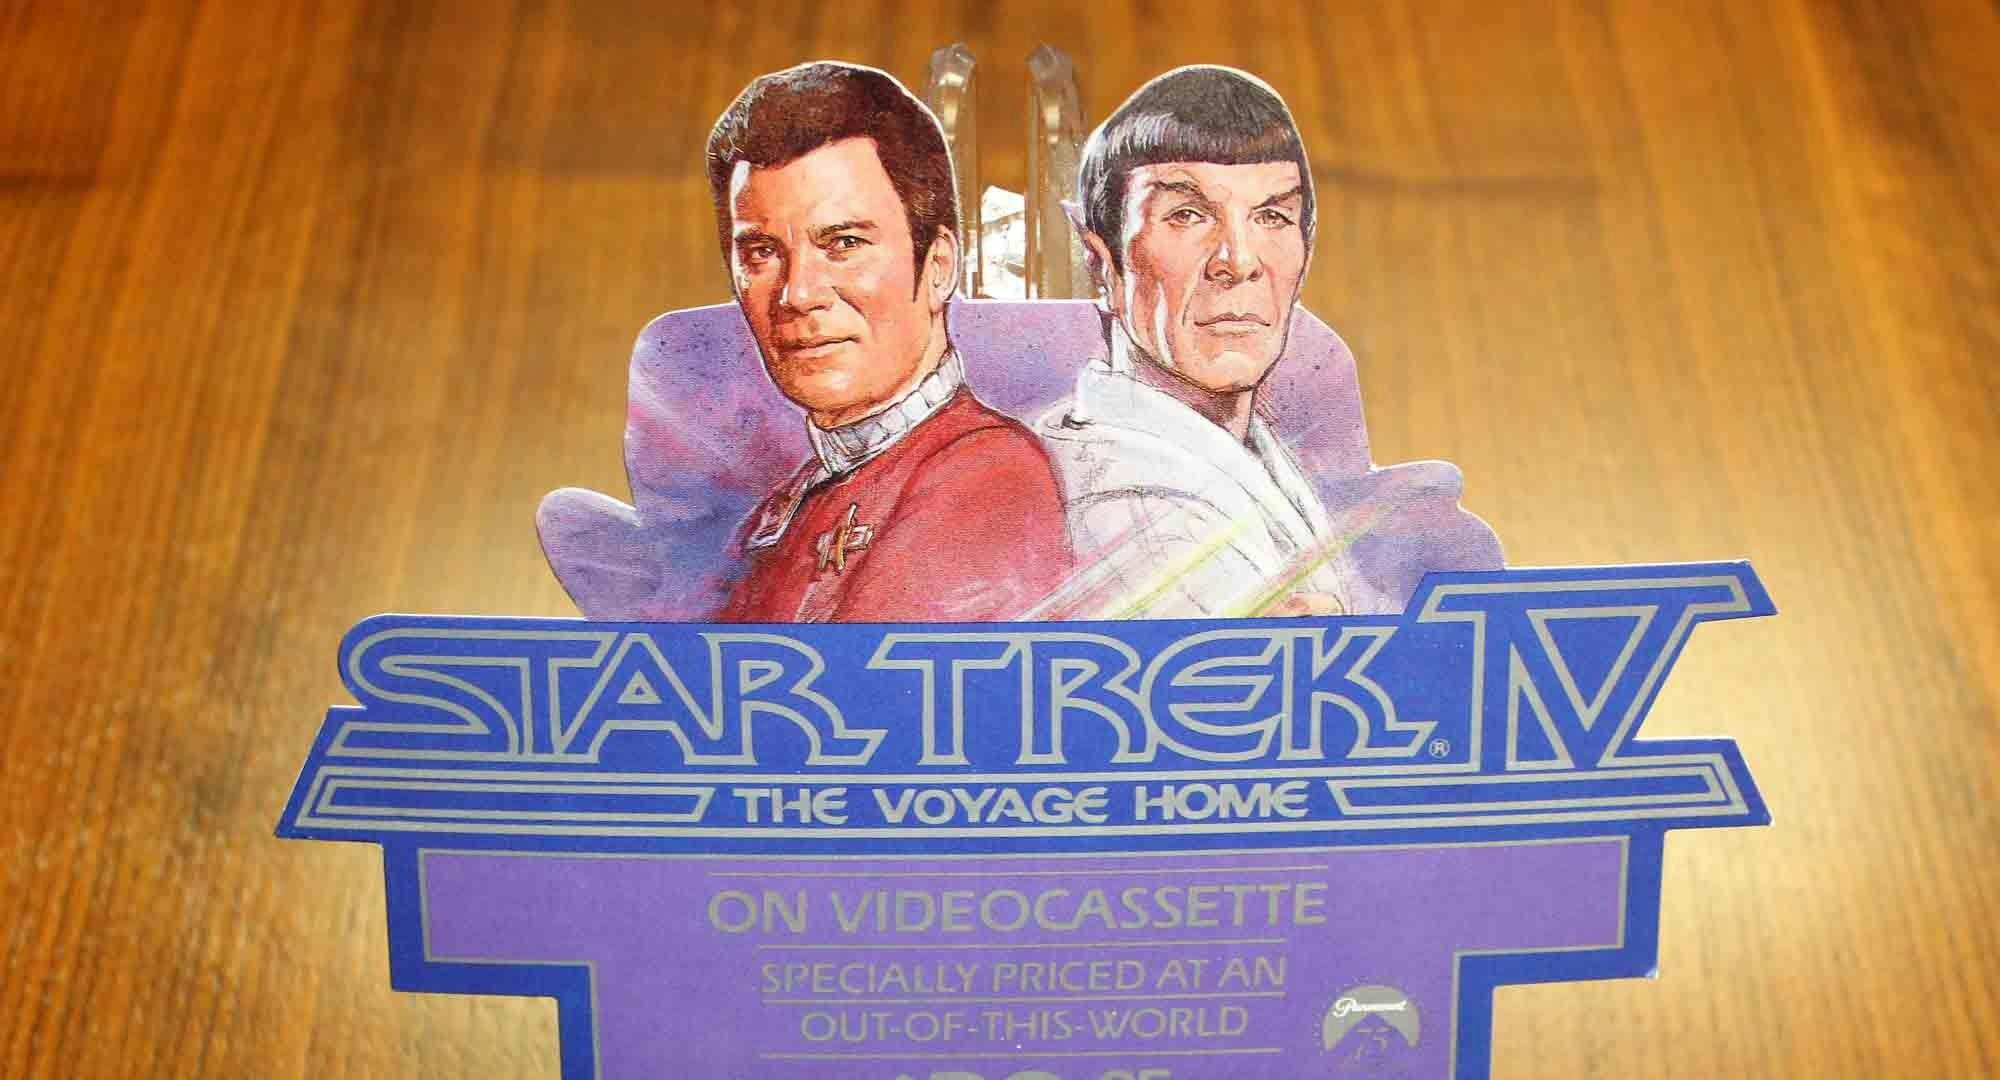 When Star Trek IV Voyaged Home 